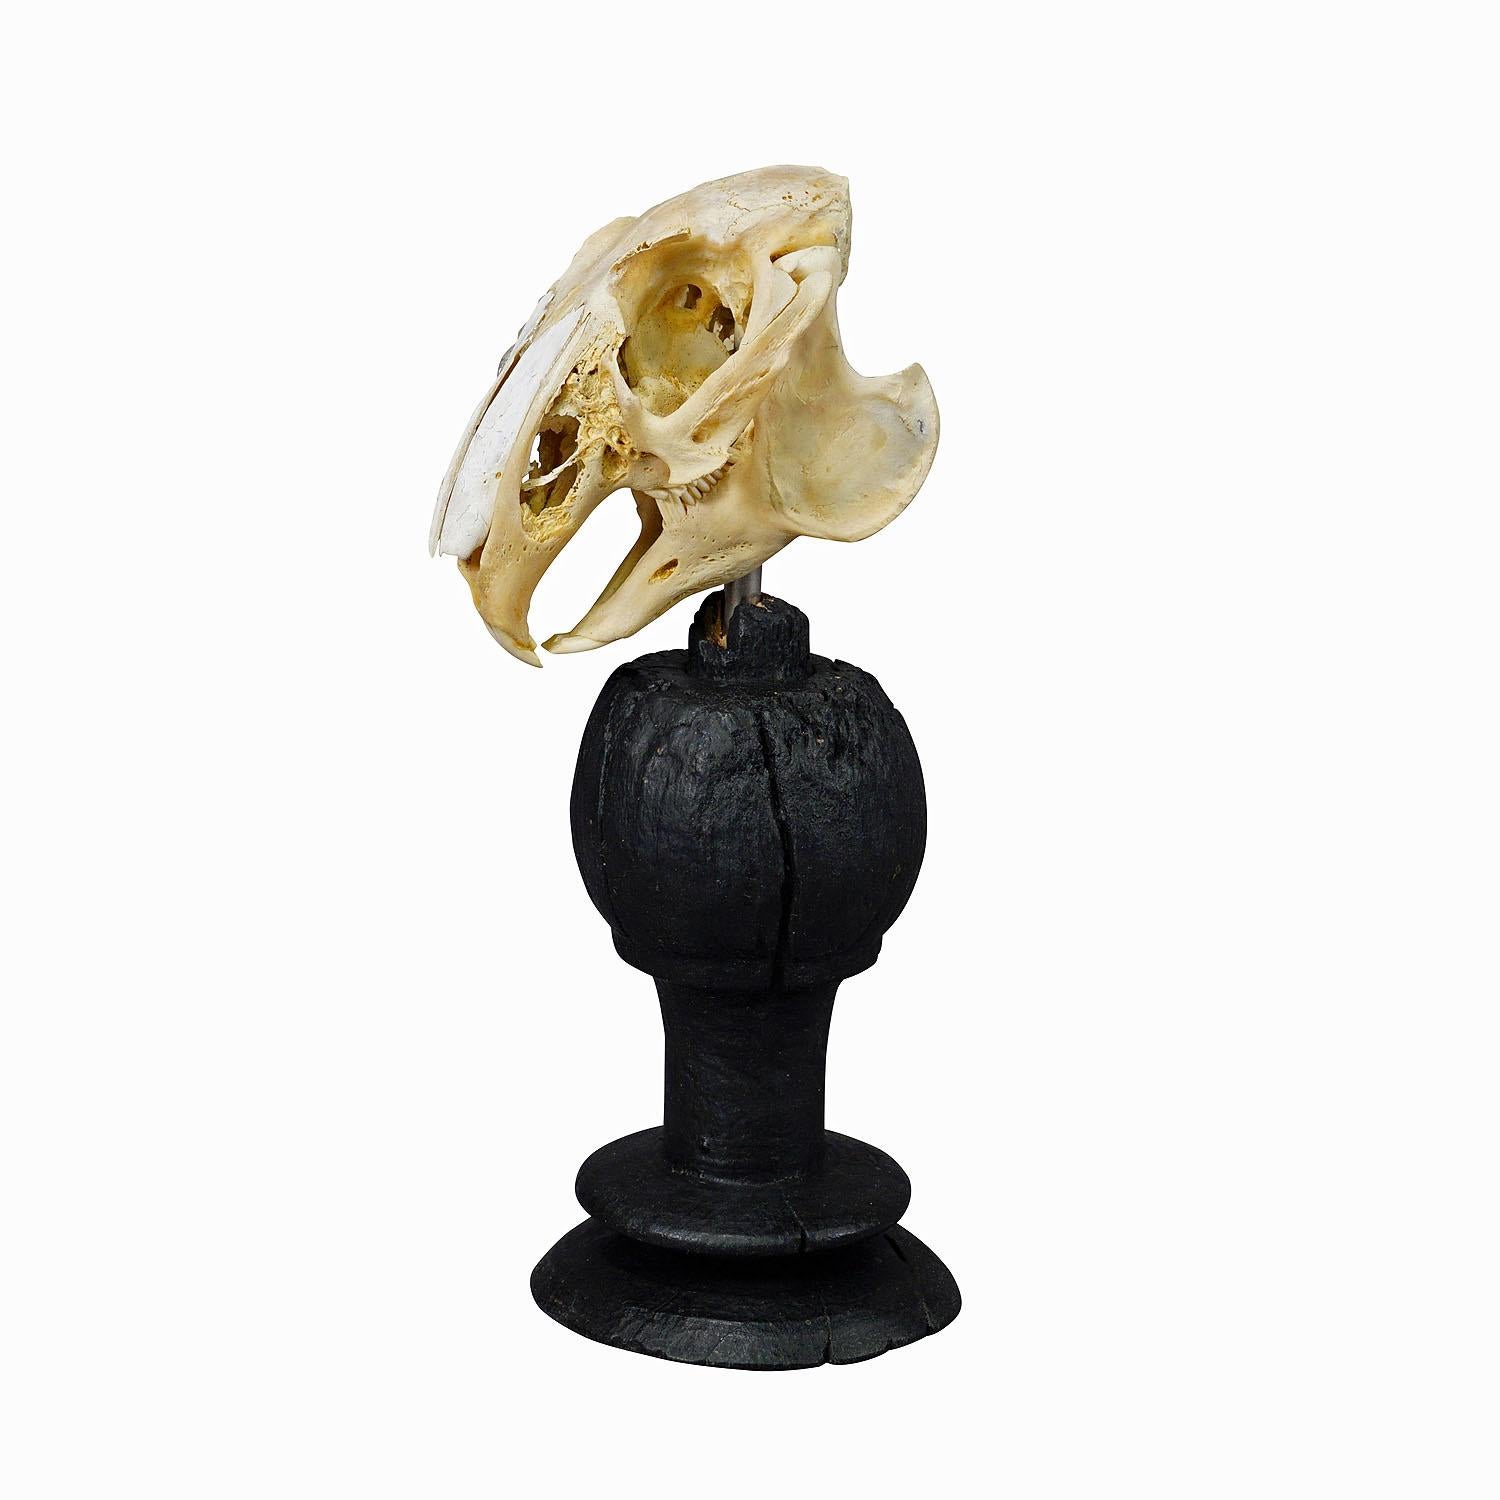 Ancien crâne réel de lapin, Allemagne, vers 1900

Crâne de lapin (Oryctolagus cuniculus) taxidermisé, monté sur une base en bois tourné ébonisé. Derive de la collection biologique du monastère de Weissenhorn dans le sud de l'Allemagne. 

Cet article